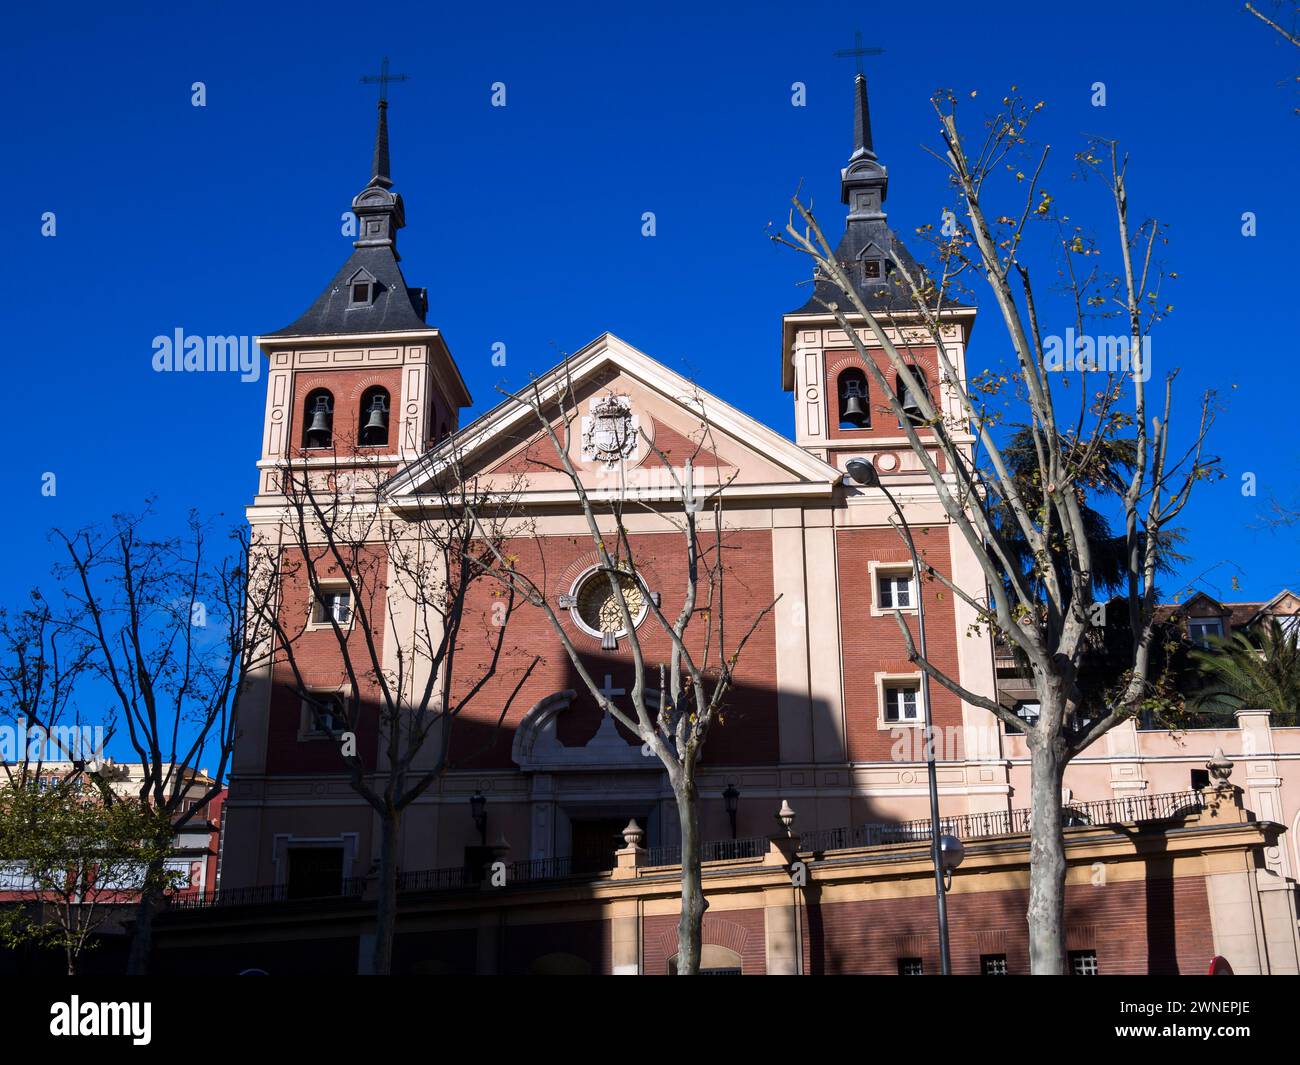 Real basílica de Nuestra Señora de Atocha. Madrid. España Stock Photo